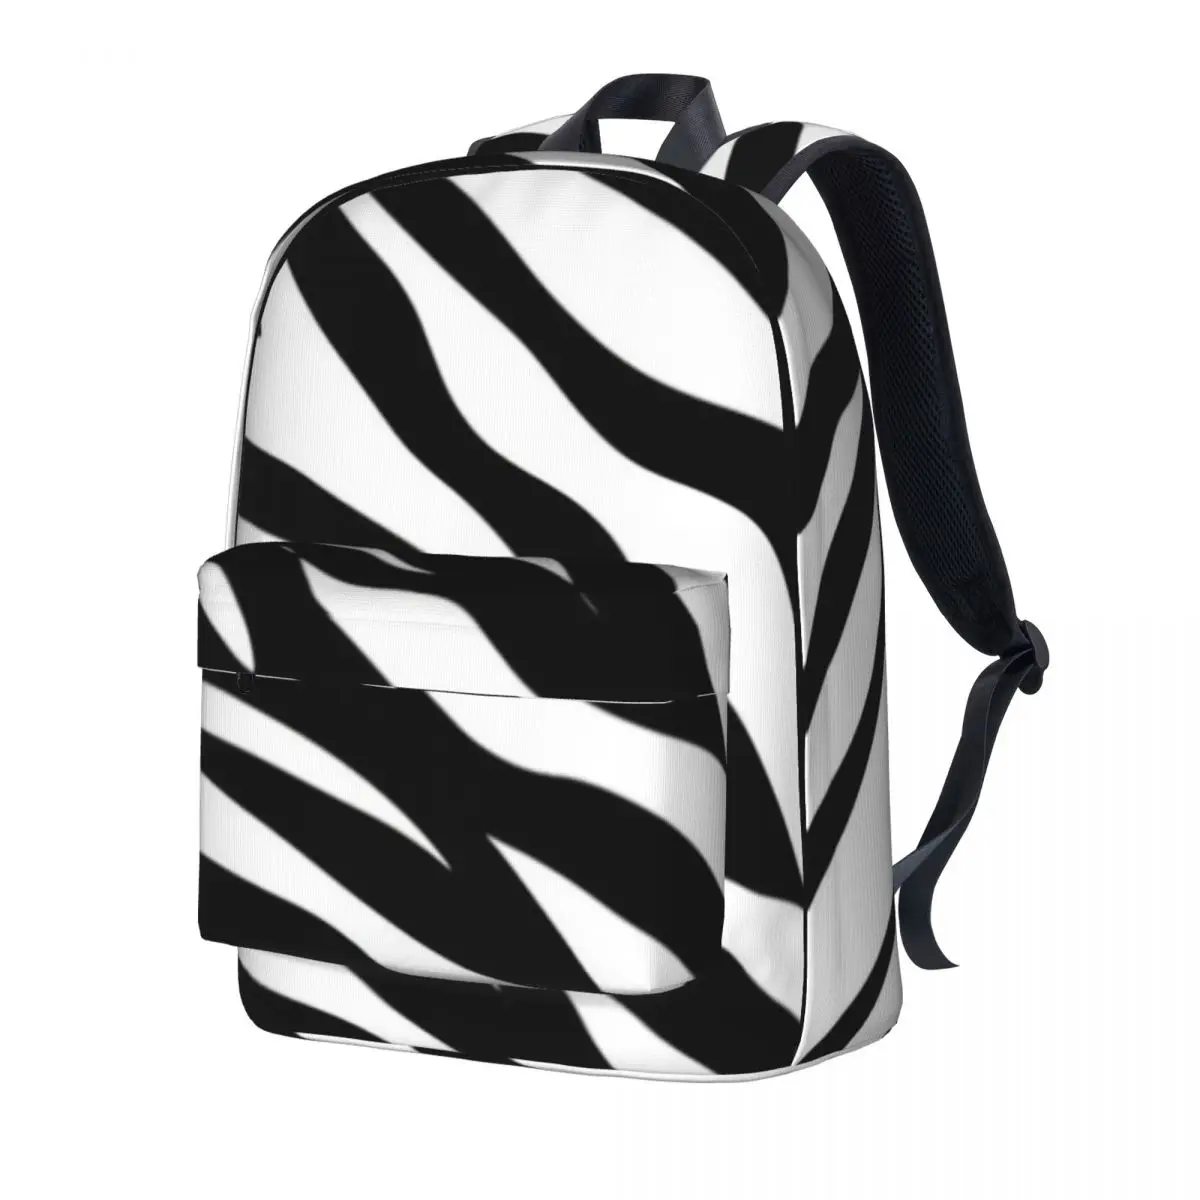 

Zebra Design Backpack Black And White Stripes Outdoor Backpacks Women Men Elegant School Bags High Quality Pattern Rucksack